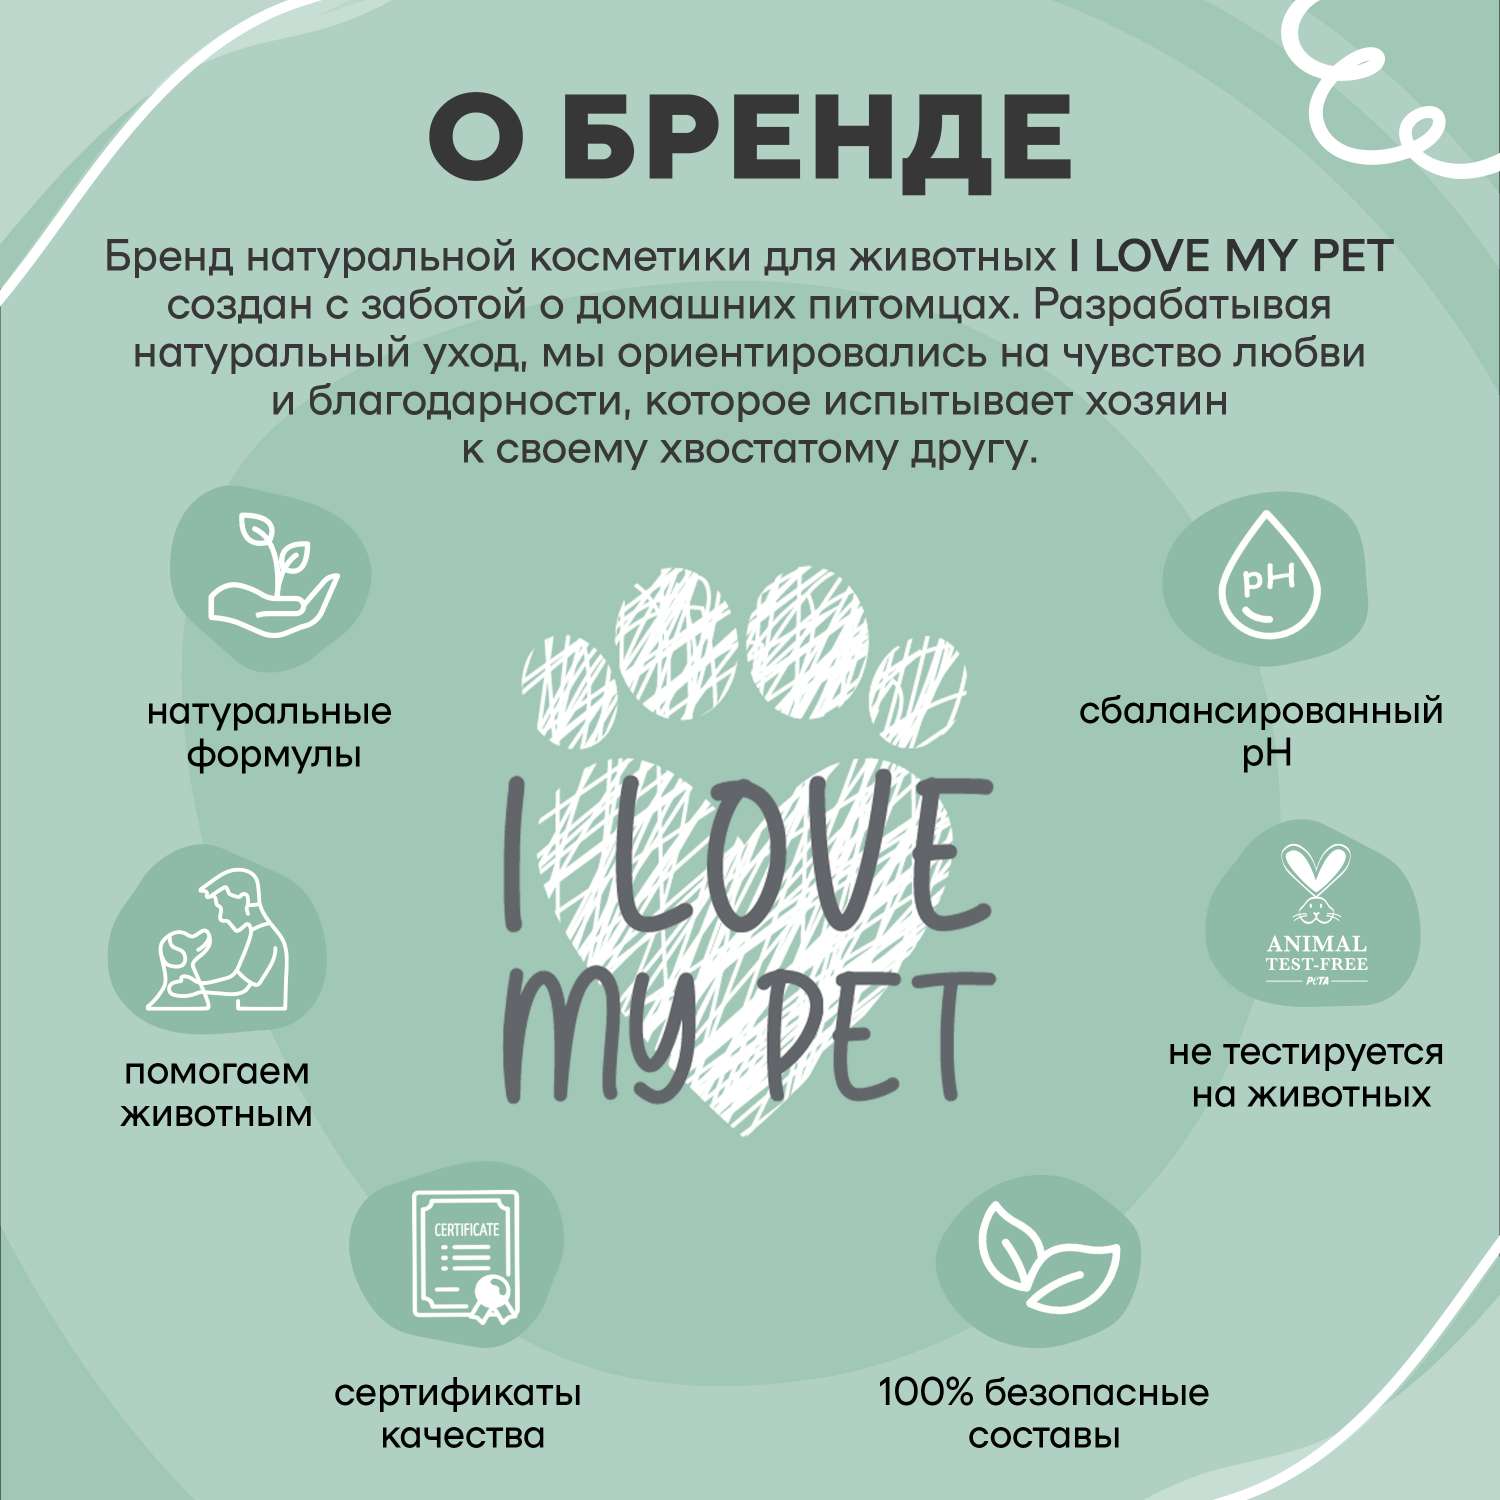 Шампунь антипаразитарный I LOVE MY PET для кошек и собак от паразитов блох и клещей 250 мл - фото 5